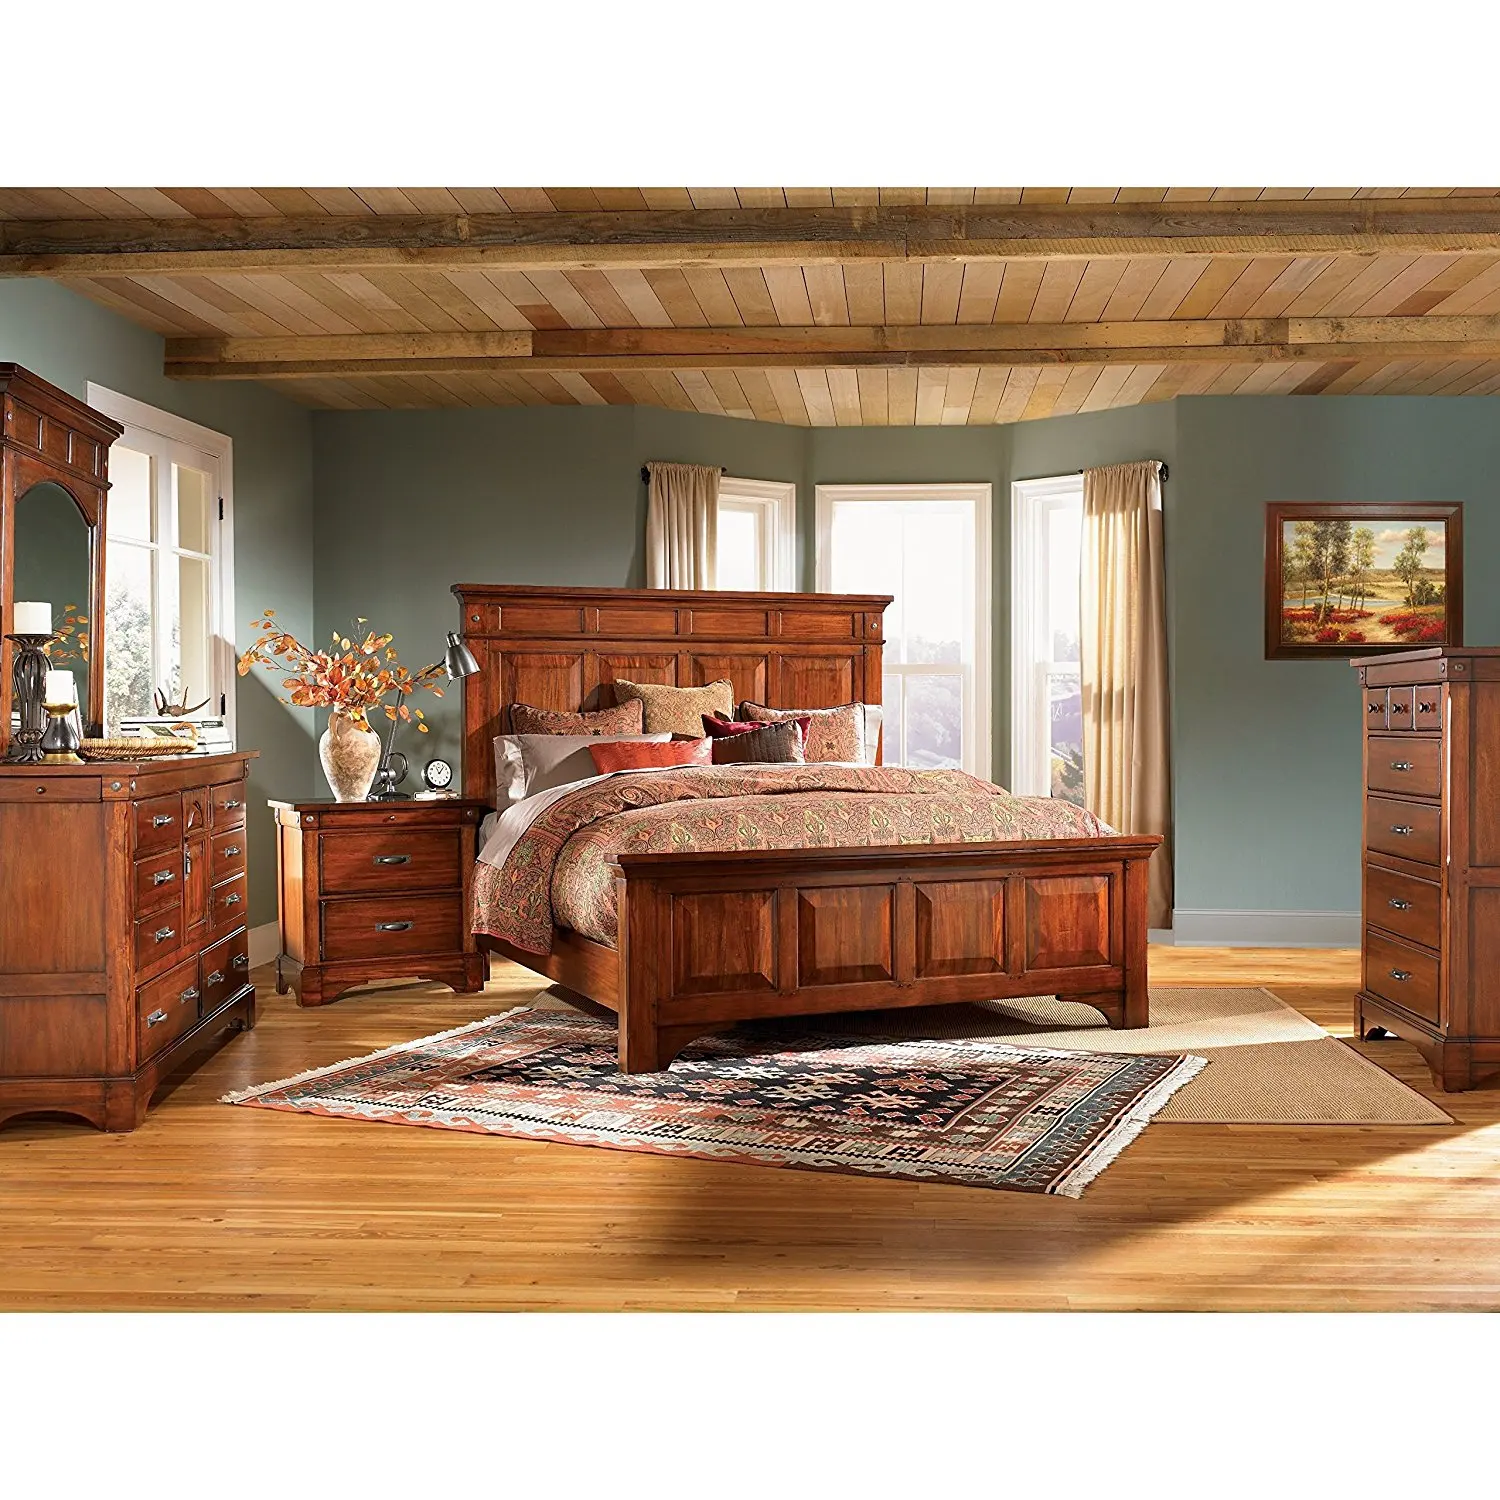 Спальня мебель дерево. Спальня из дерева. Комната с деревянной мебелью. Спальни из массива дерева. Спальня с деревянной мебелью.